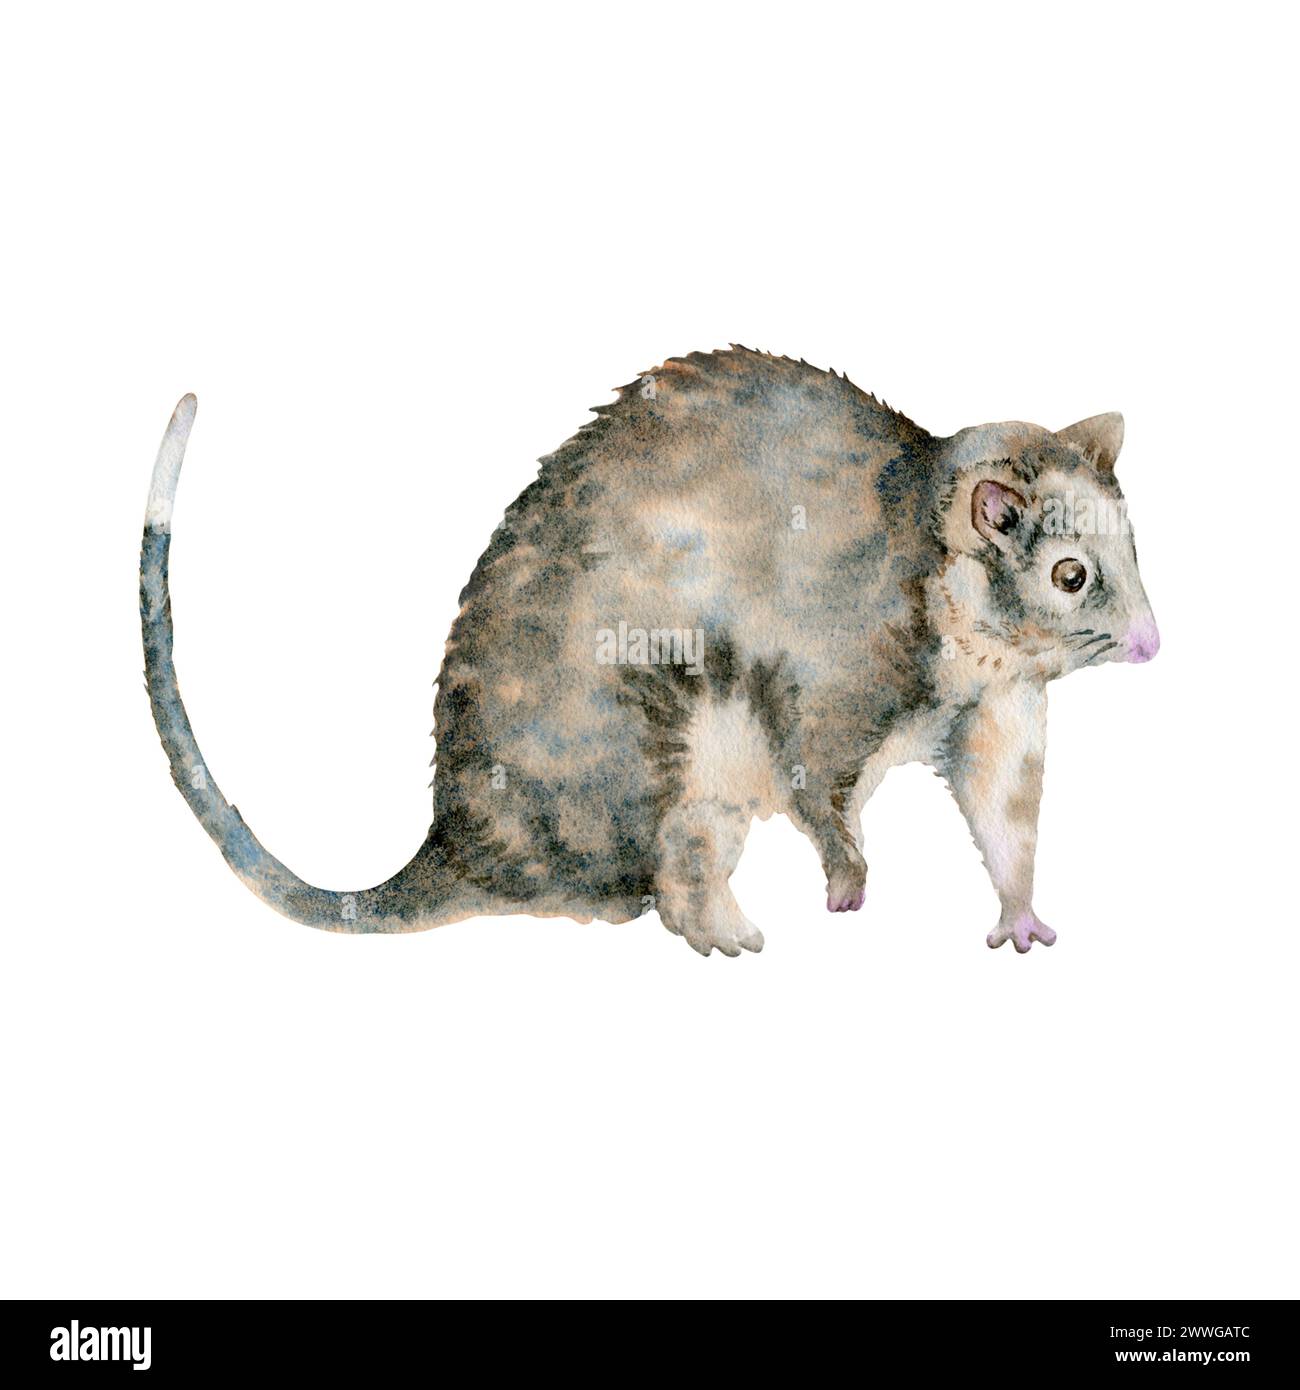 Opossum coda di rondine. Animale marsupiale nativo australiano notturno. Illustrazione acquerello isolata su sfondo bianco. Elemento disegnato a mano nazionale Foto Stock